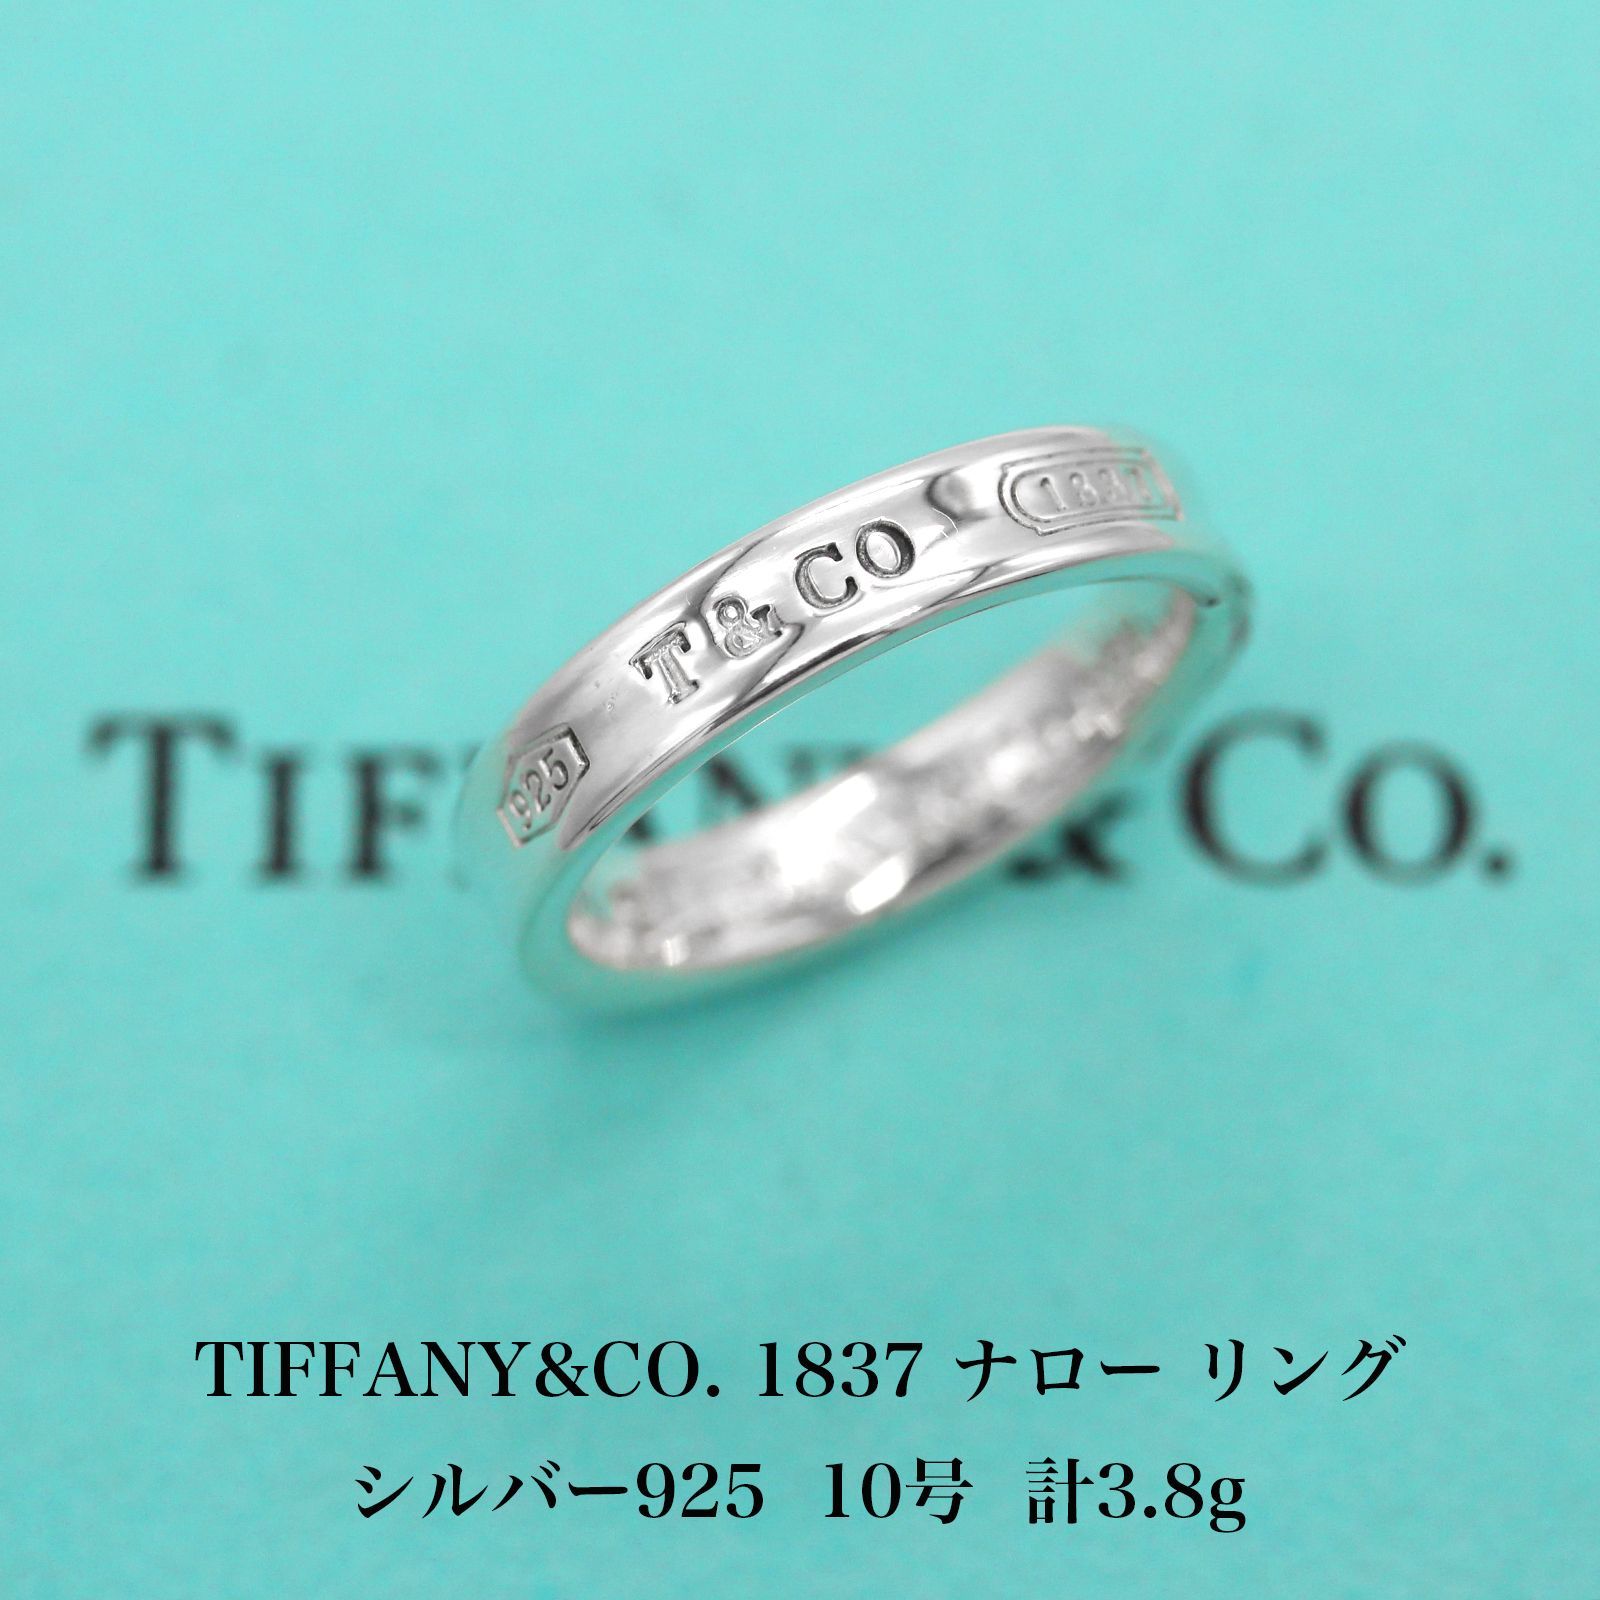 極美品 ティファニー TIFFANYu0026CO. 1837 ナロー シルバ−925 リング 10号 アクセサリー ジュエリー 指輪 A04355 -  メルカリ